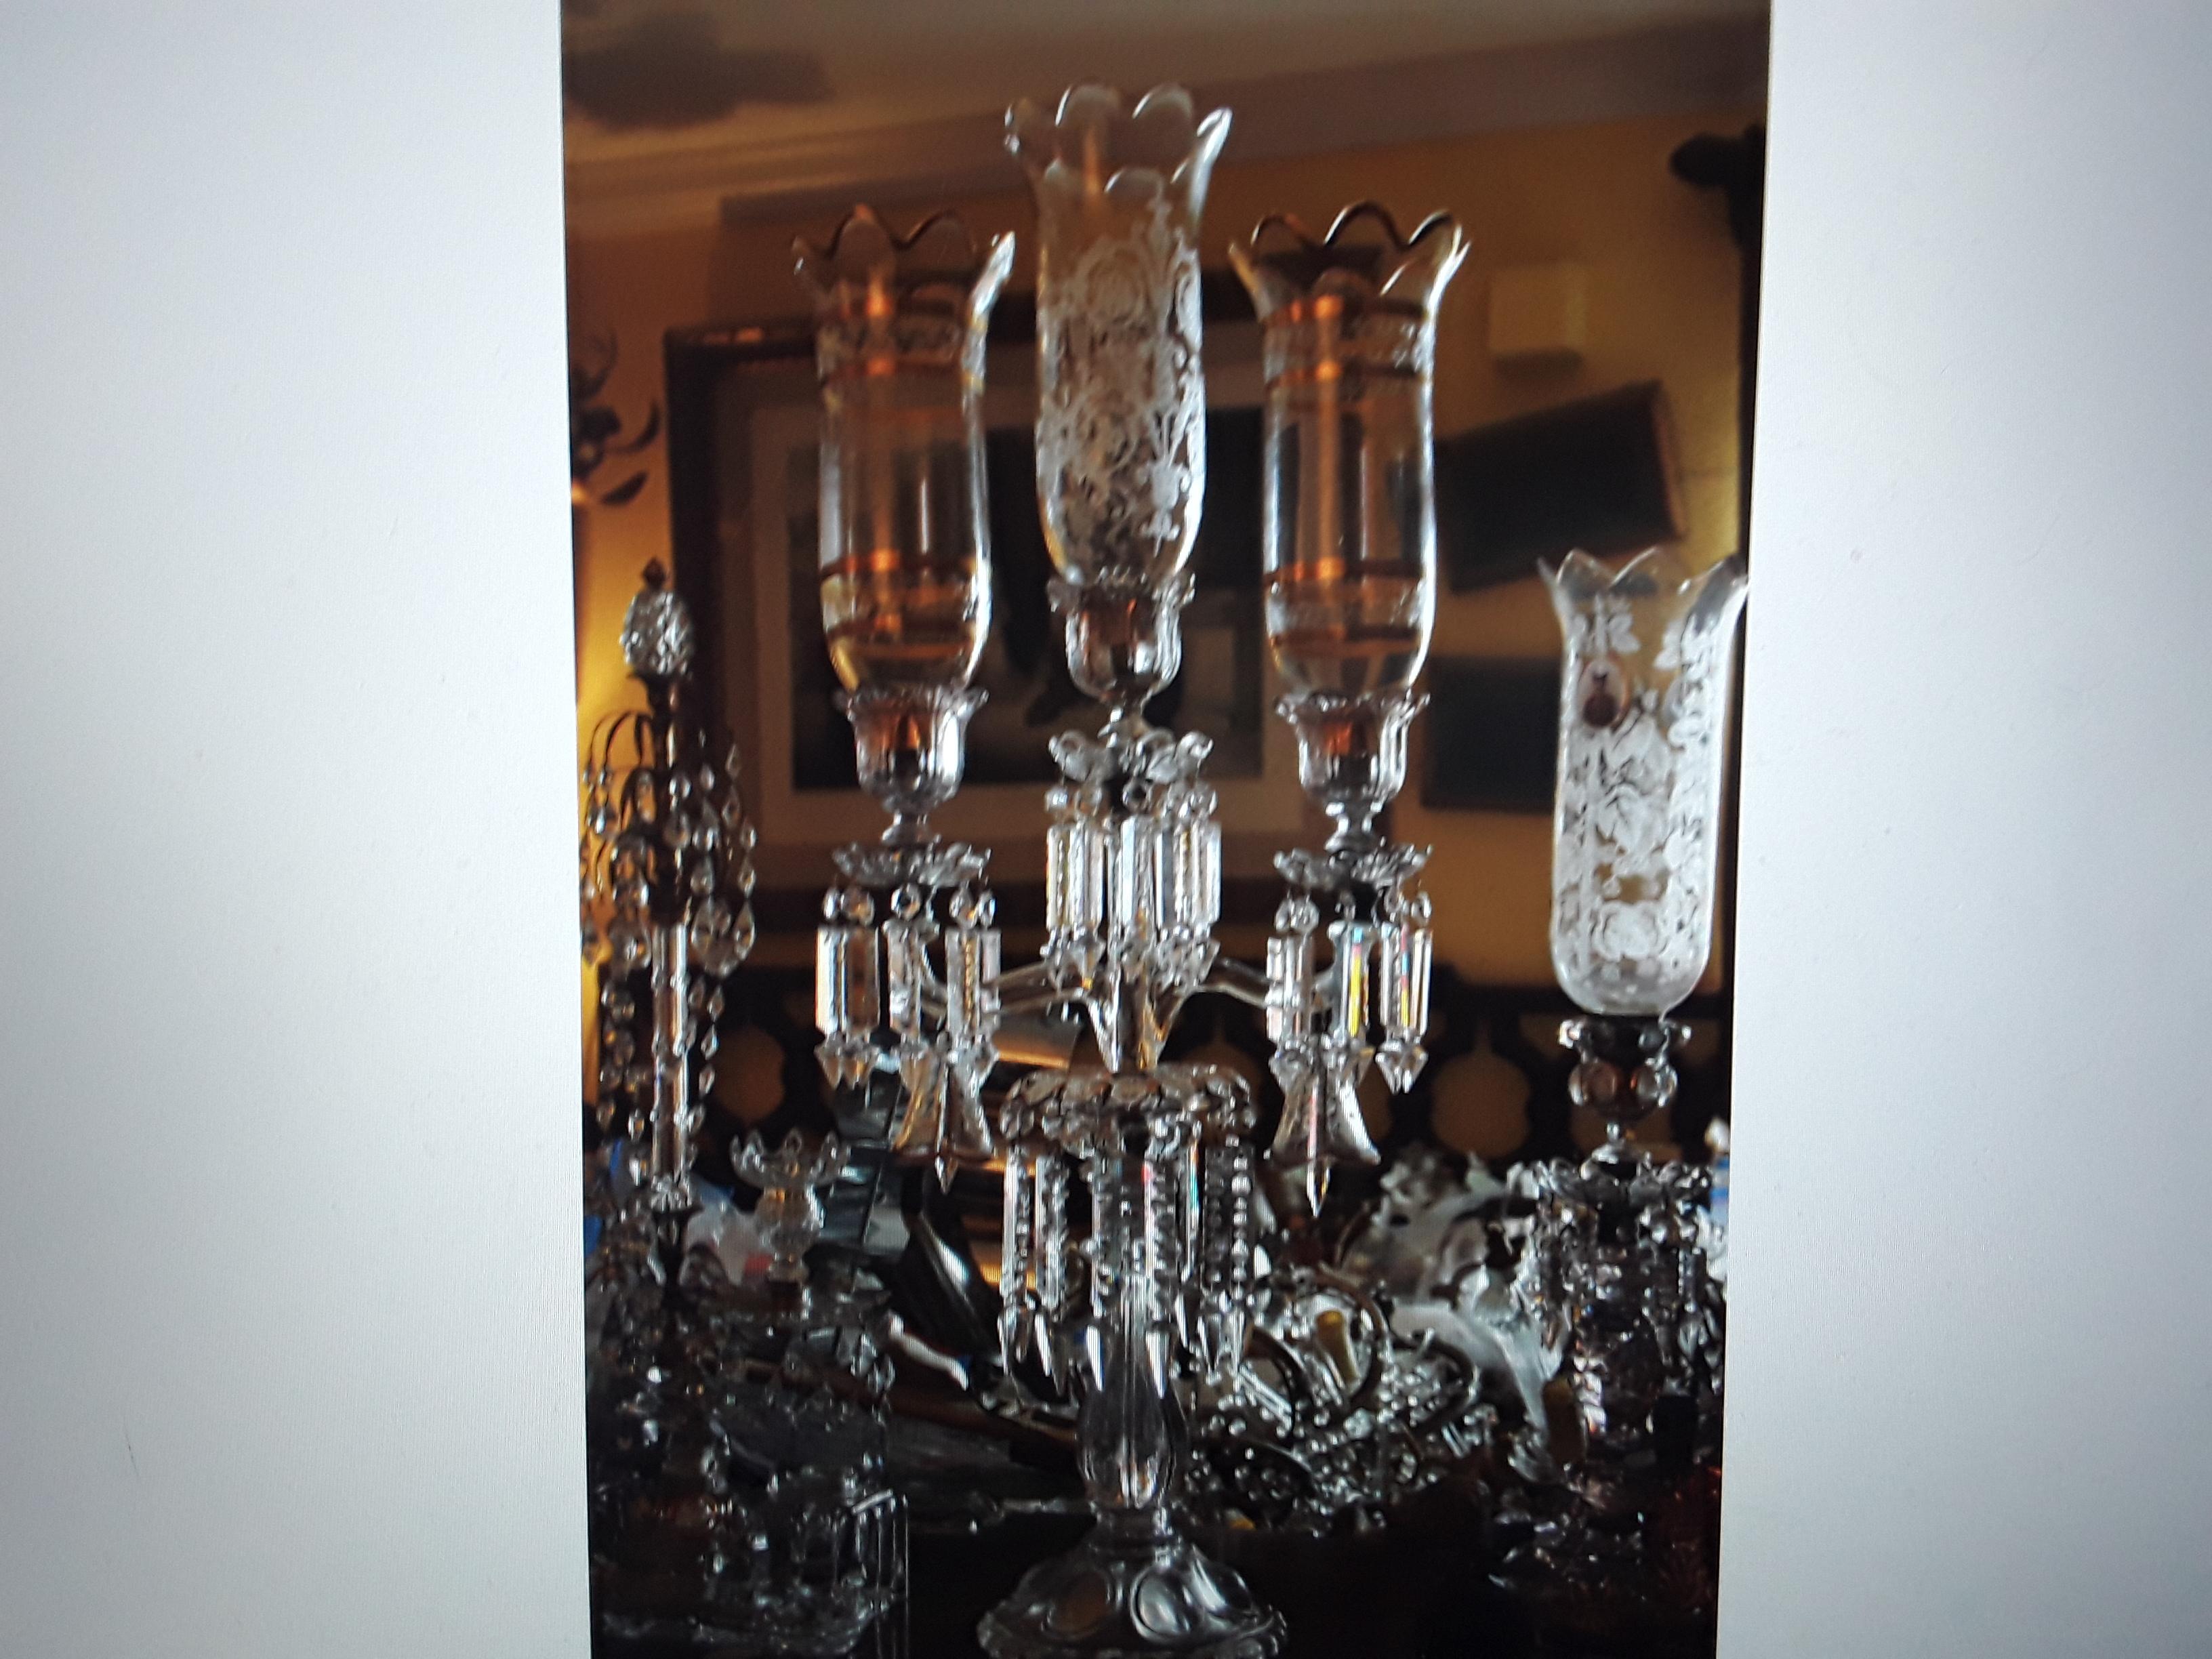 Chandelier à 3 lumières en cristal de Baccarat d'époque Napoléon III (1890). Une pièce massive ! Décor floral peint à la main avec des teintes 24K. Cloches peintes de motifs floraux. Veuillez regarder attentivement les photos car elles racontent une